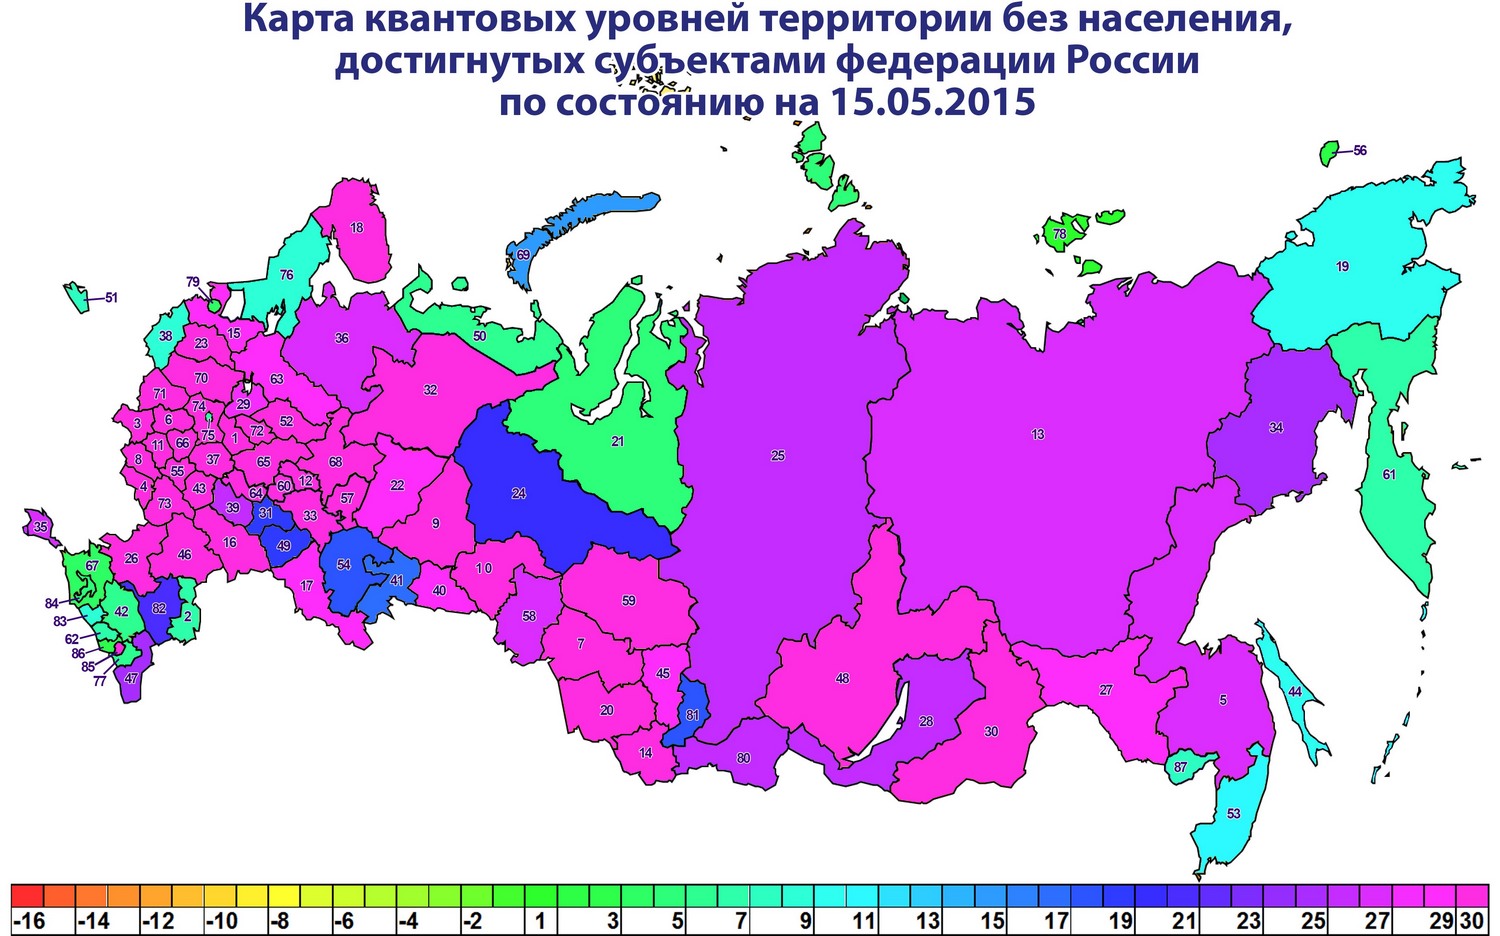 Россия территория без населения на 15.05.2016